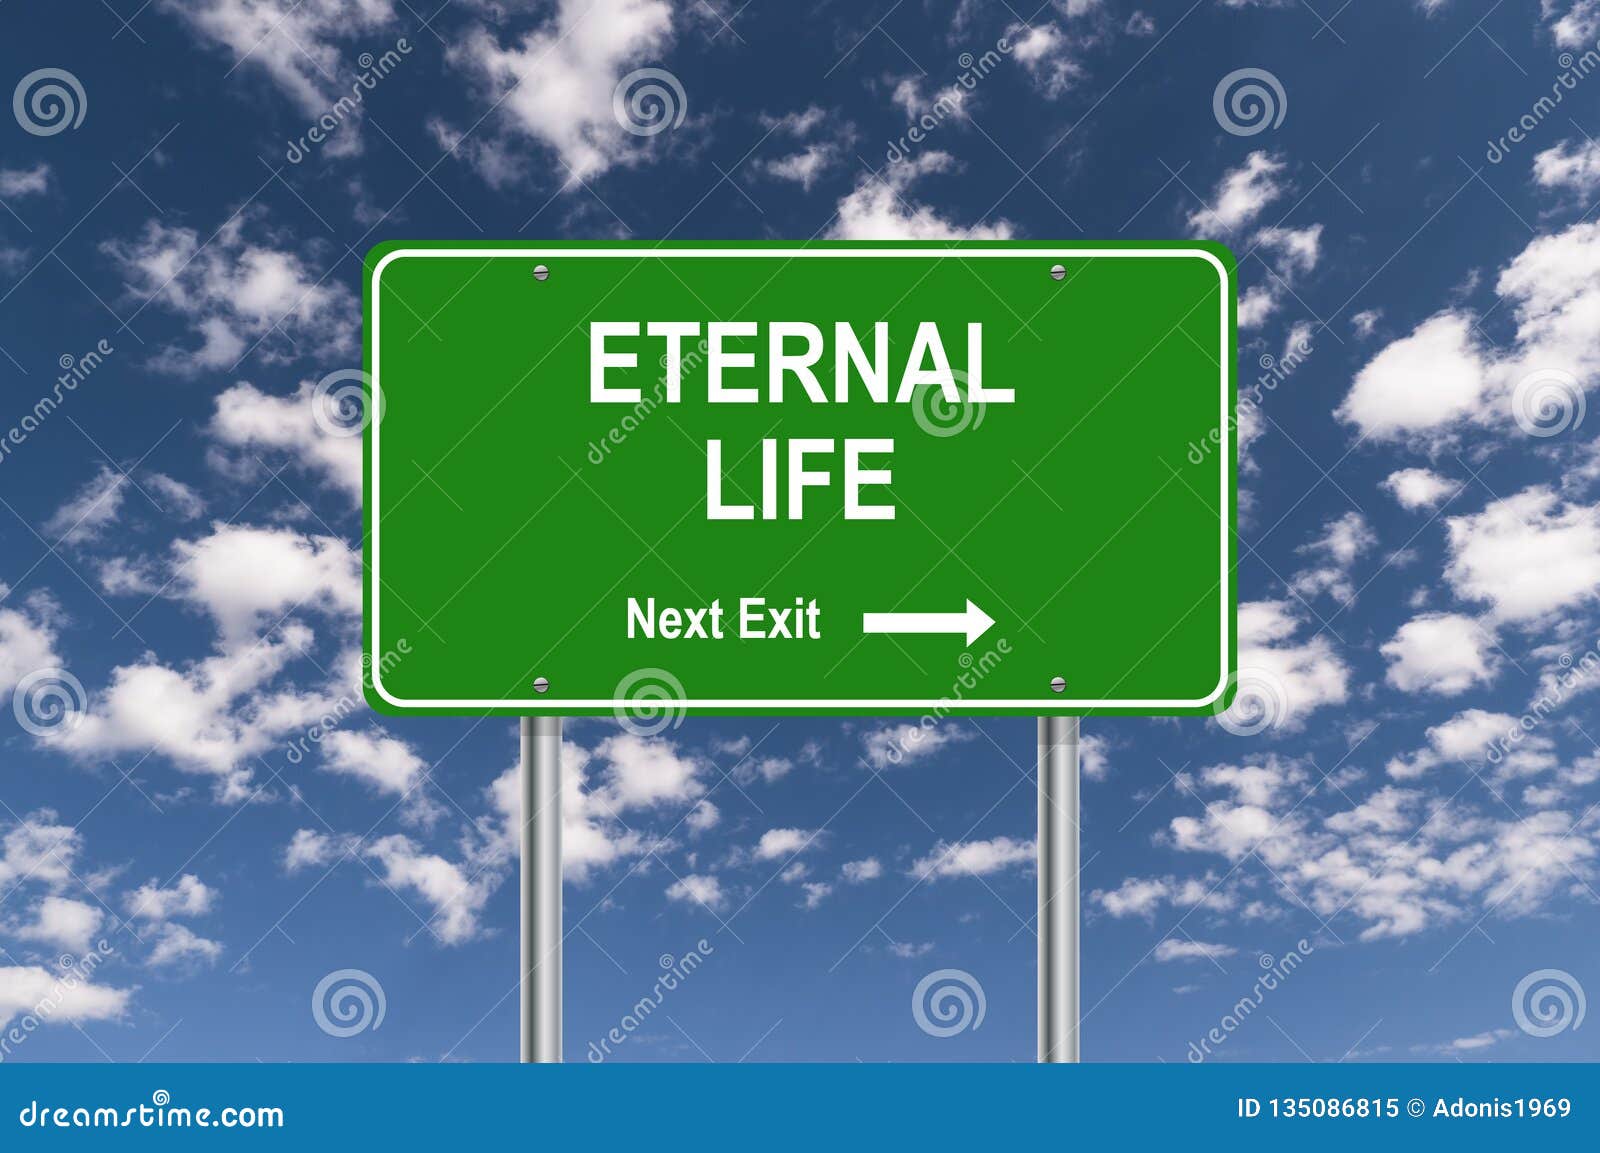 eternal life next exit